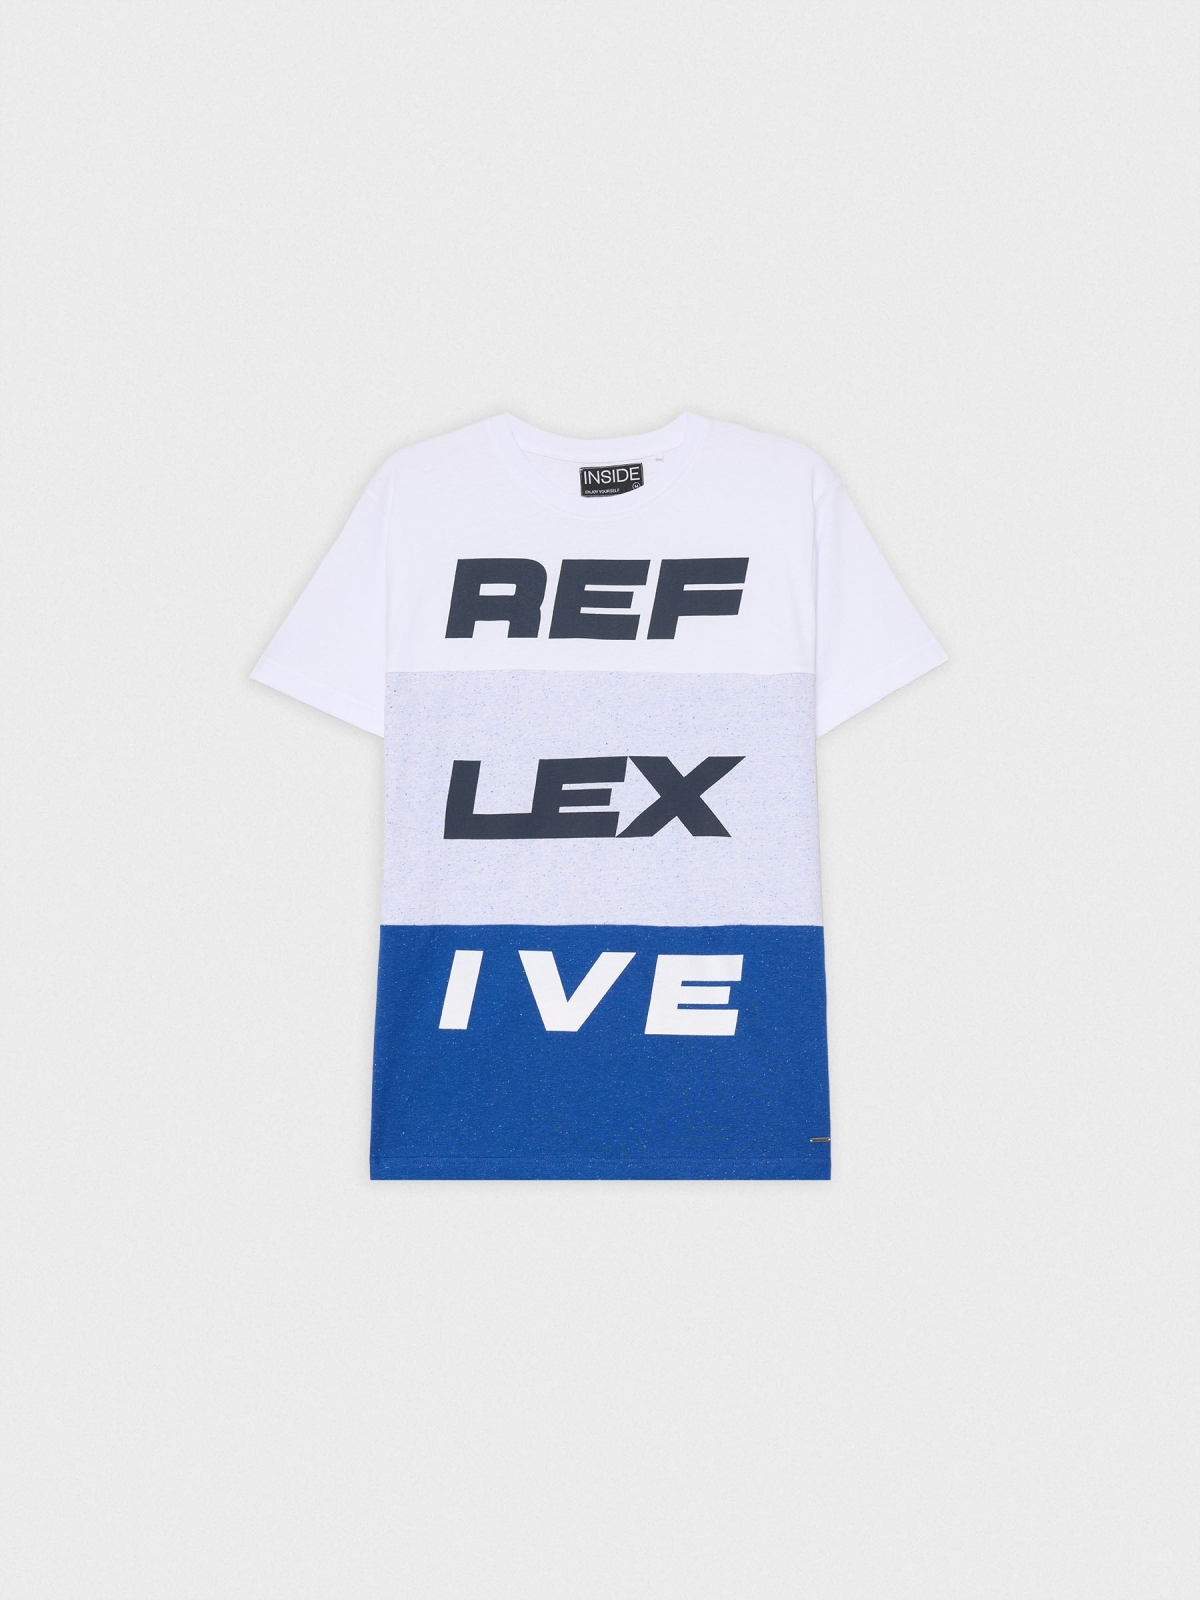  Camiseta REF LEX IVE azul